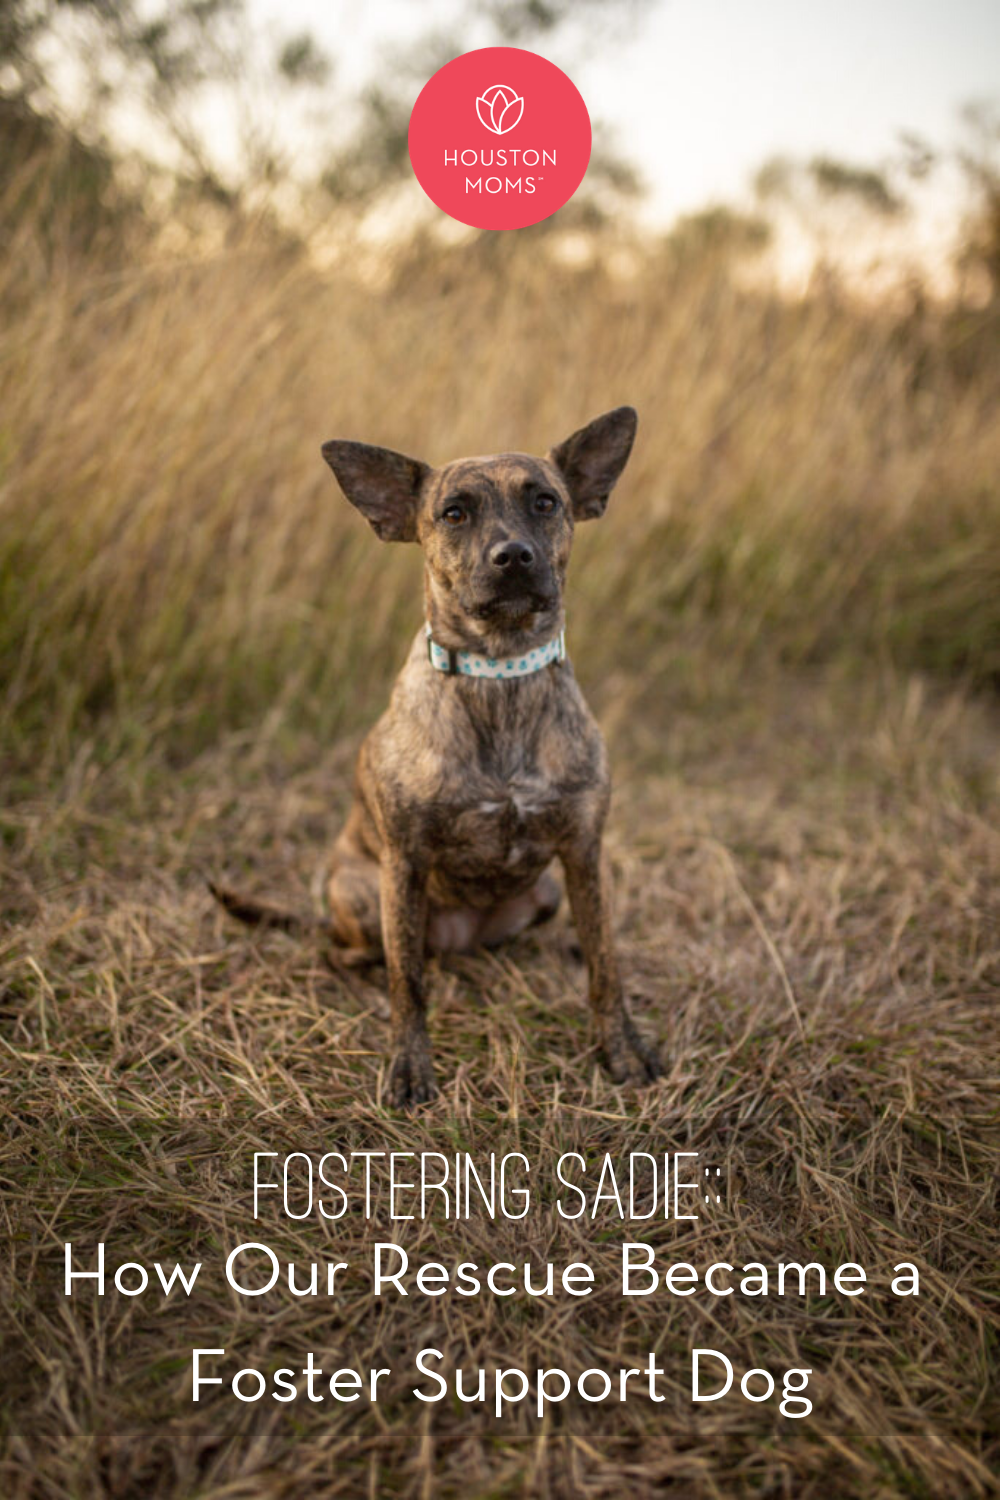 Houston Moms "Fostering Sadie:: How Our Rescue Became a Foster Support Dog" #houstonmoms #houstonmomsblog #momsaroundhouston